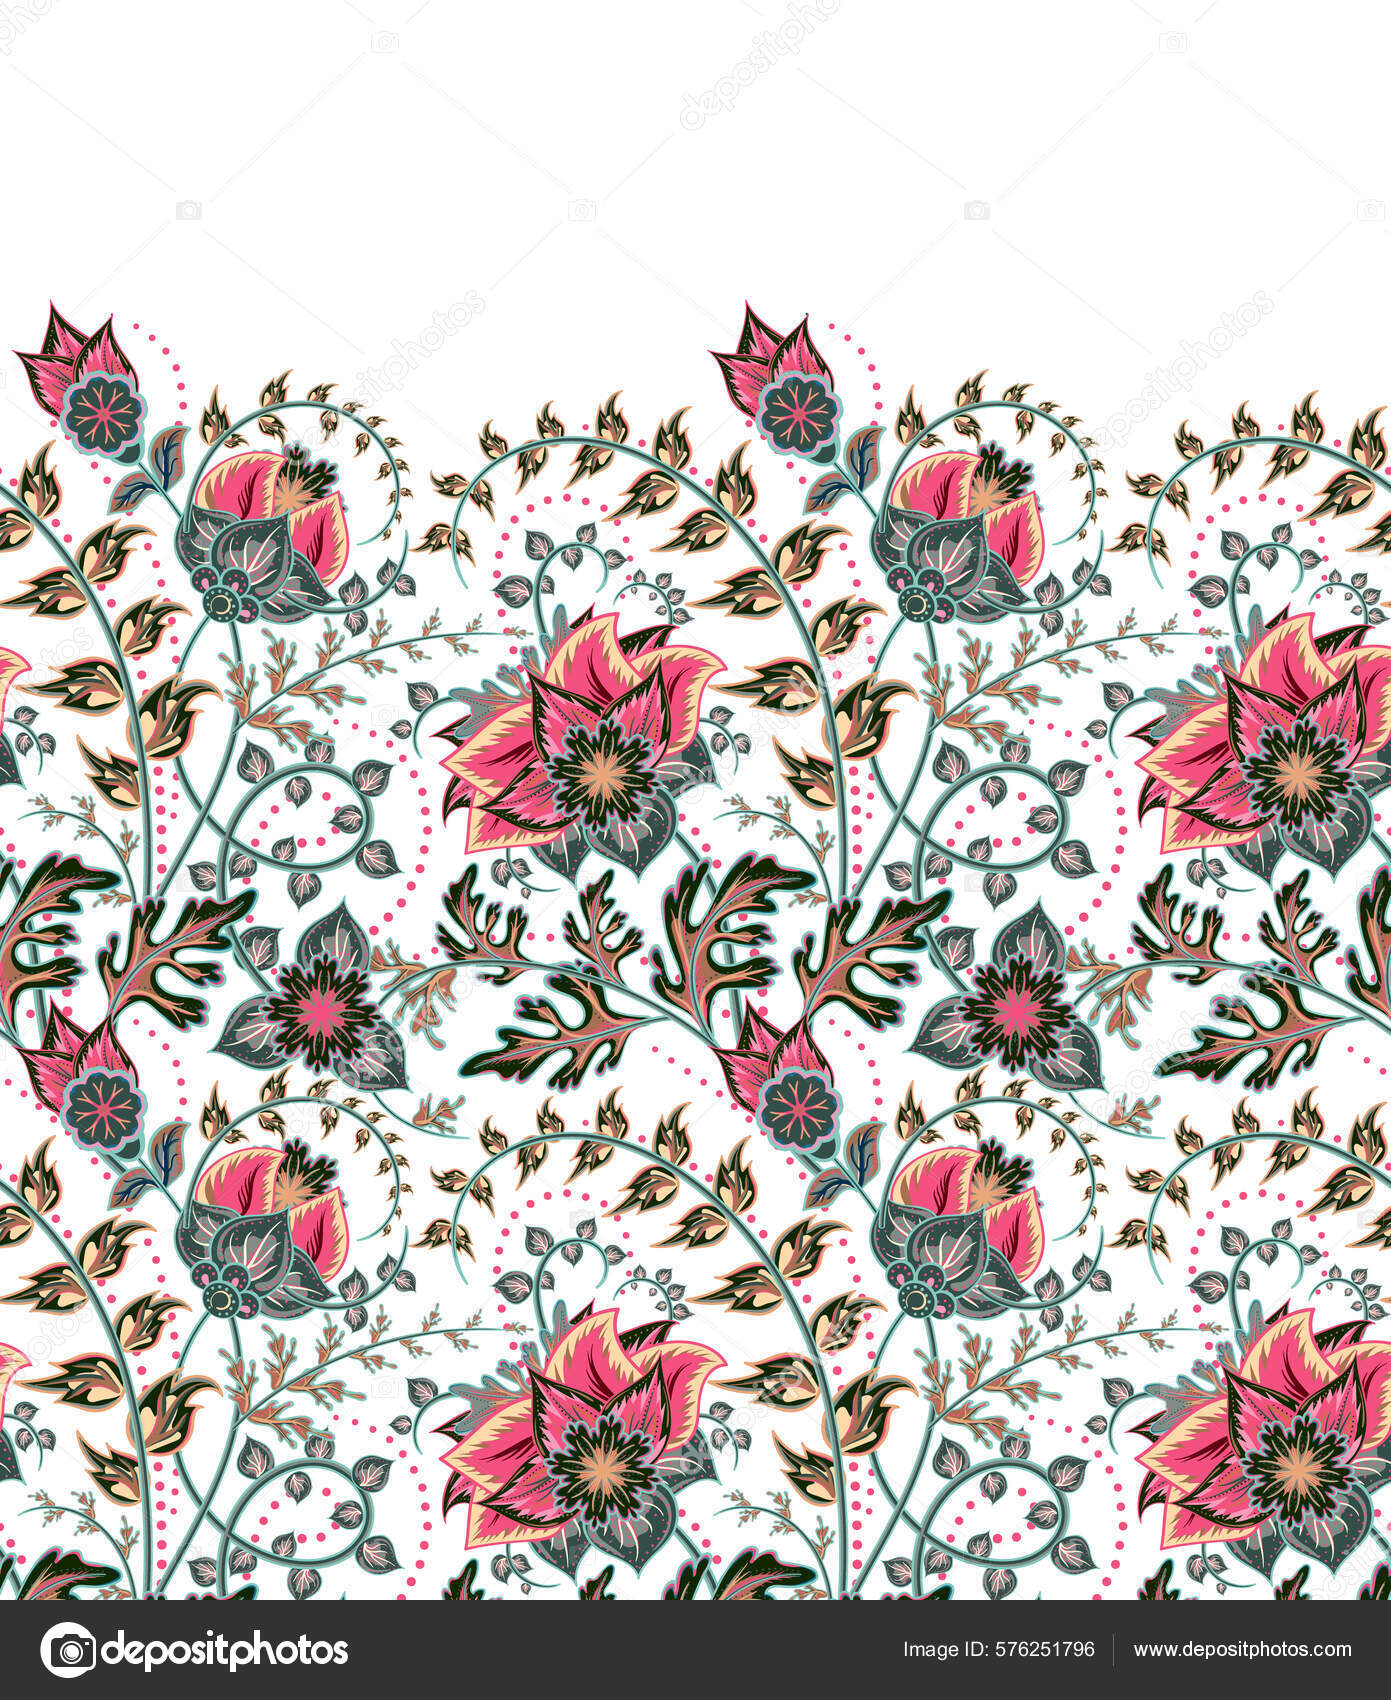 https://st.depositphotos.com/5454582/57625/v/1600/depositphotos_576251796-stock-illustration-seamless-vertical-fantasy-flowers-border.jpg